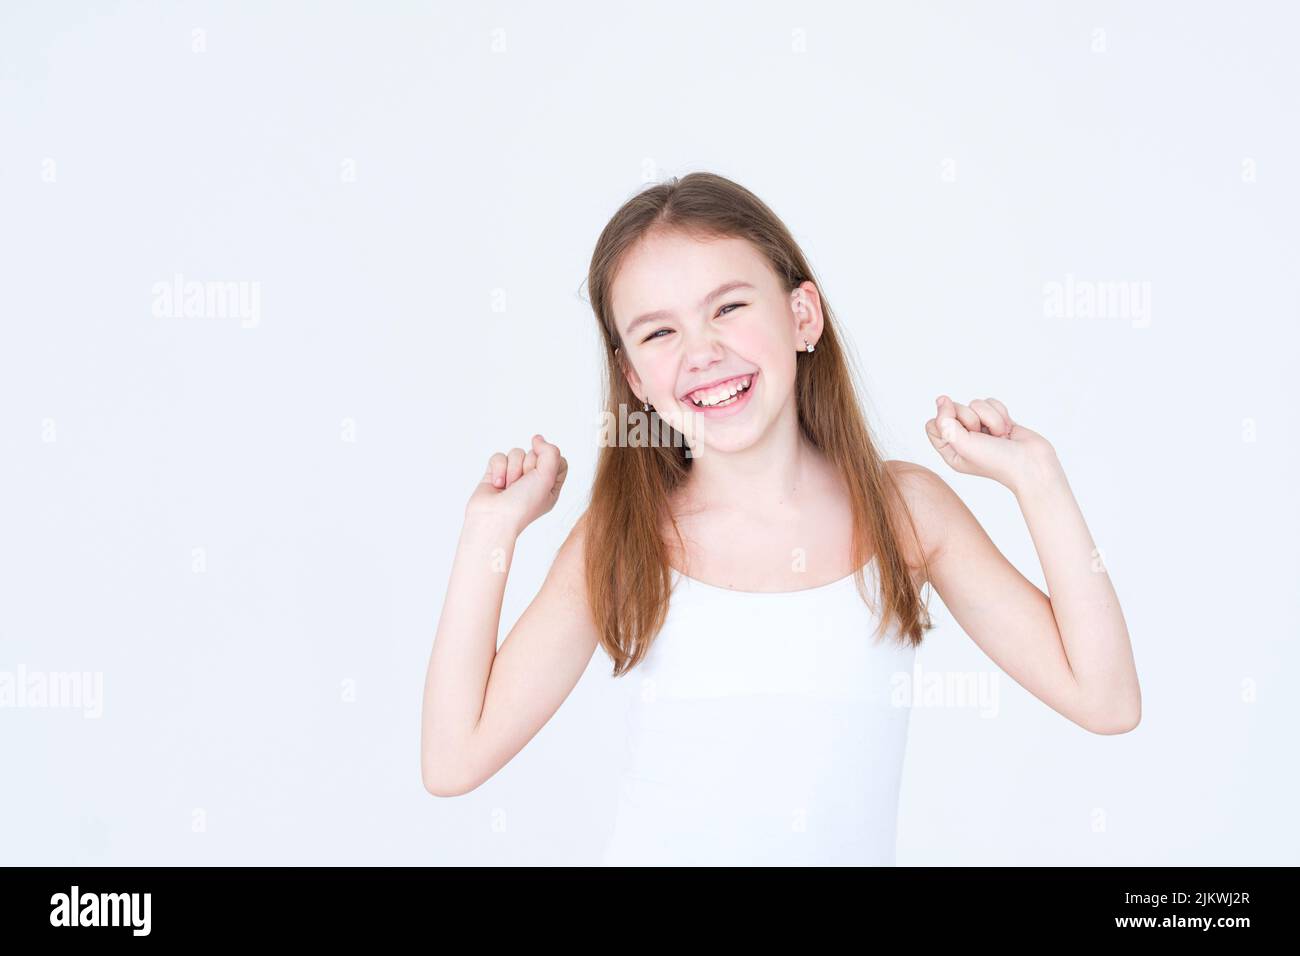 emotion joyful delighted smiling child girl Stock Photo